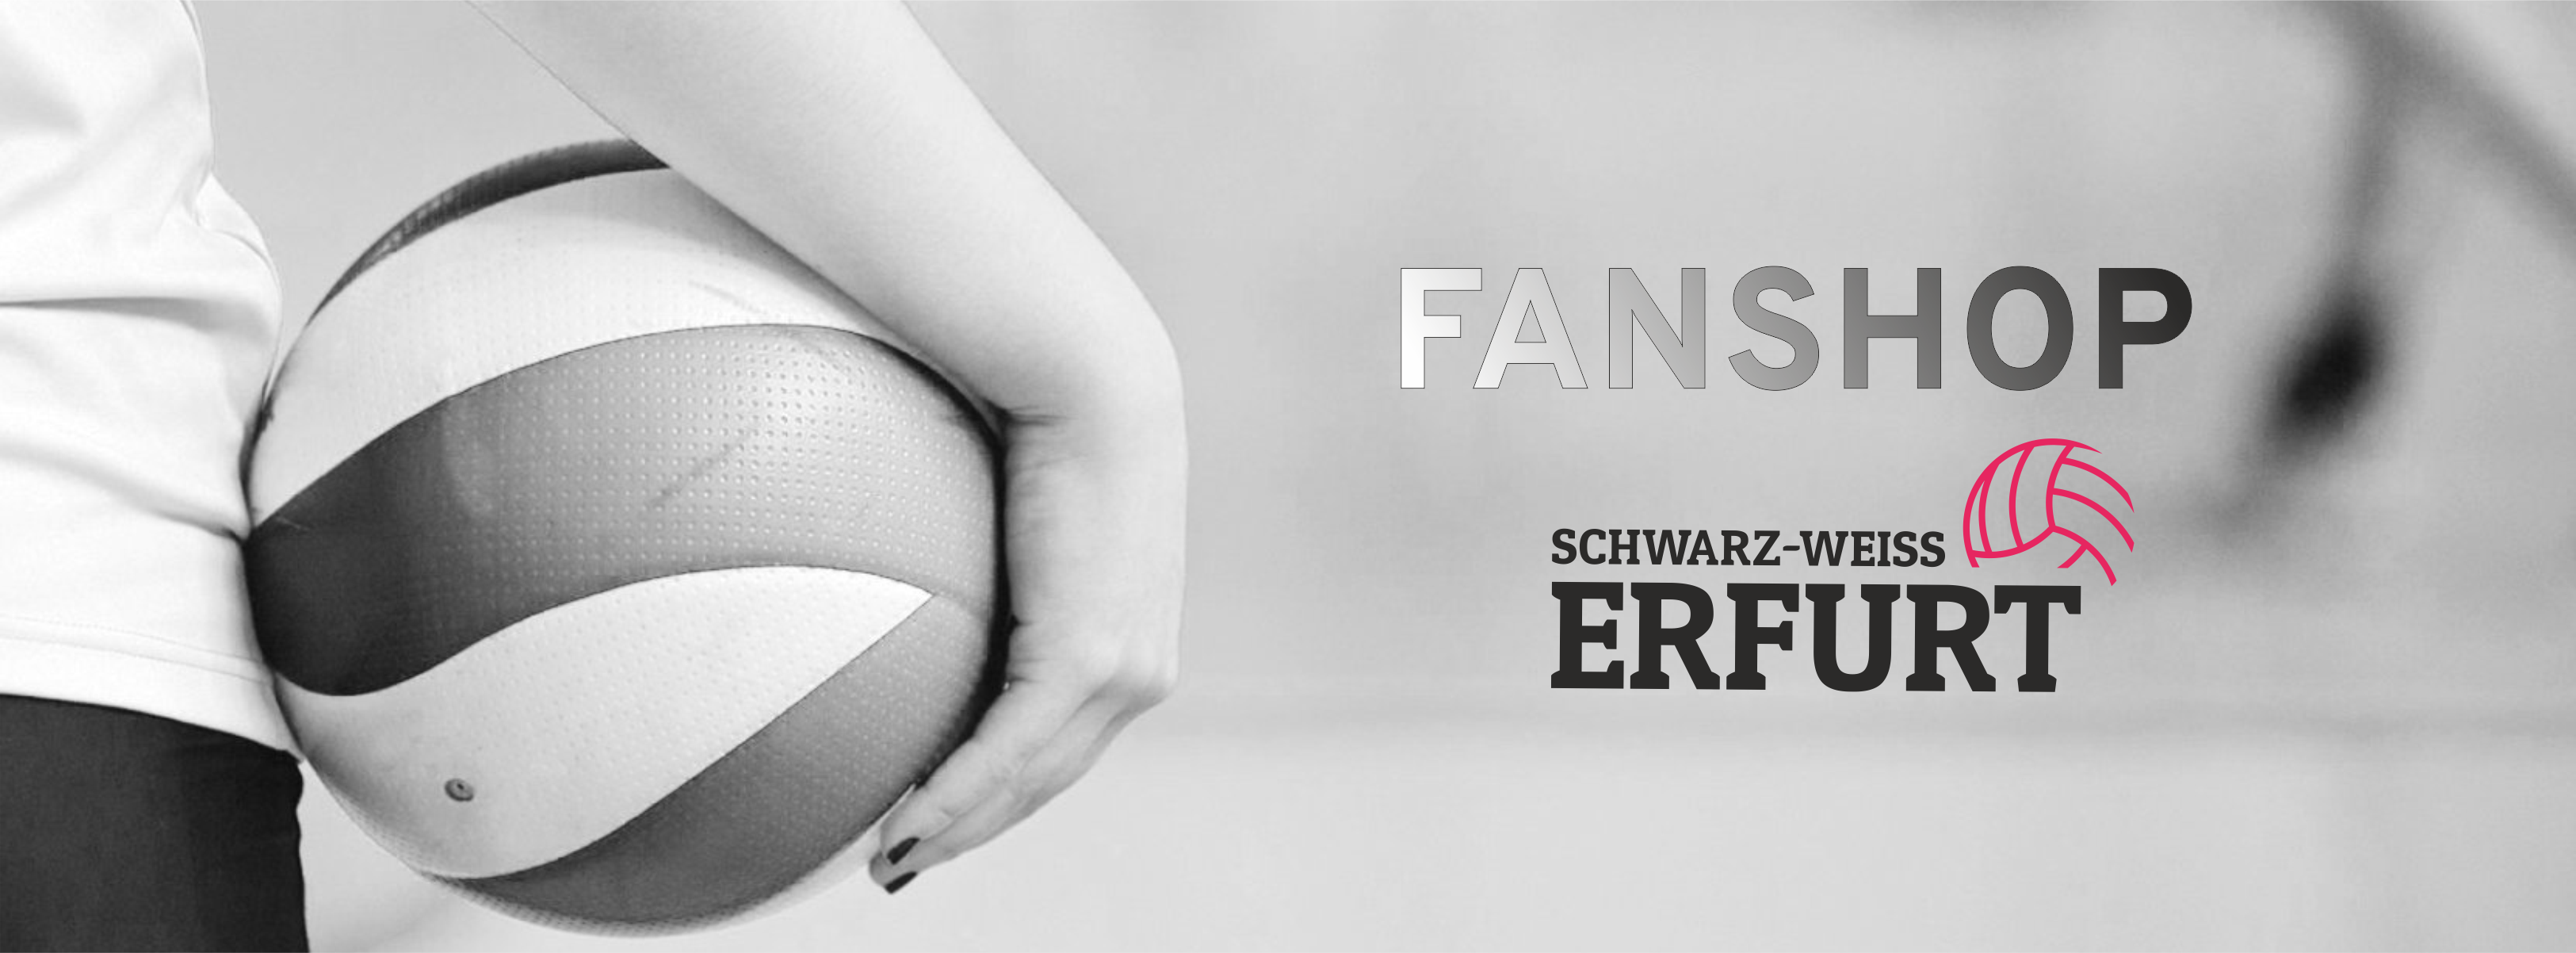 Fanshop Schwarz-Weiß Erfurt Title Image